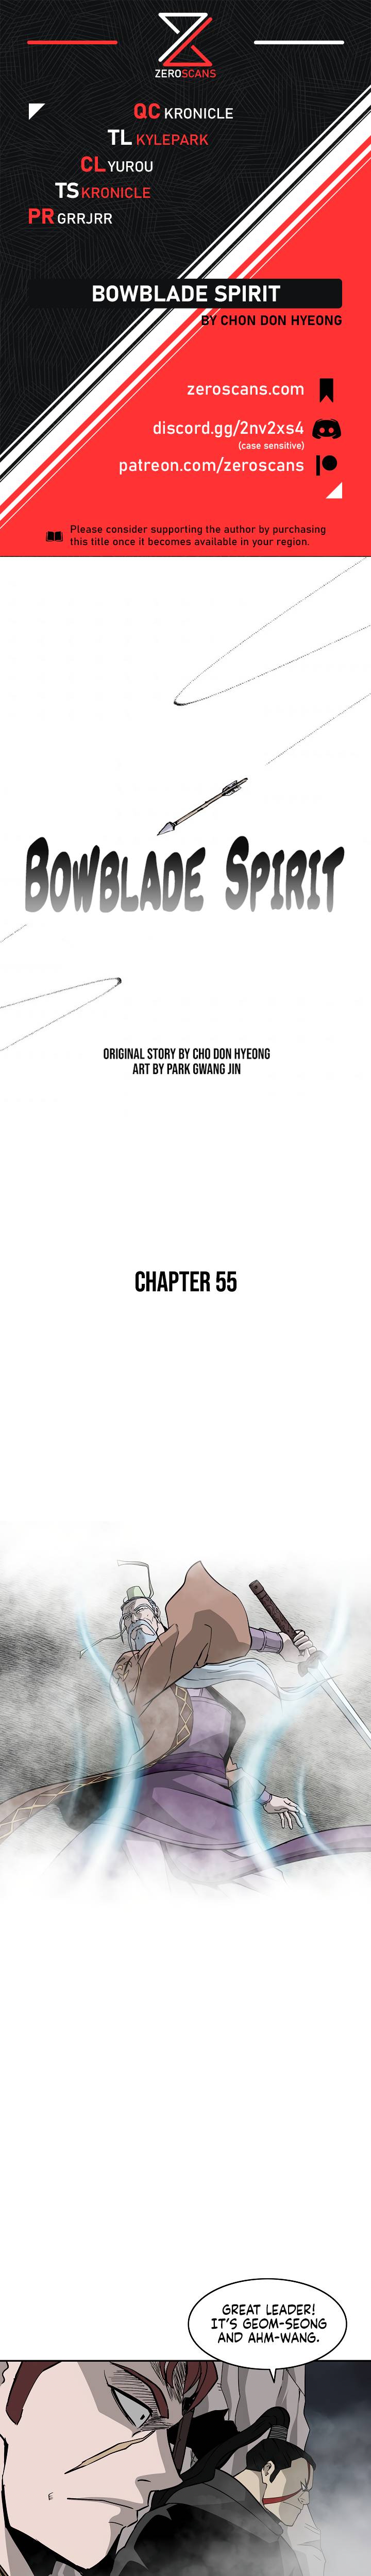 Bowblade Spirit - Chapter 55 Page 1